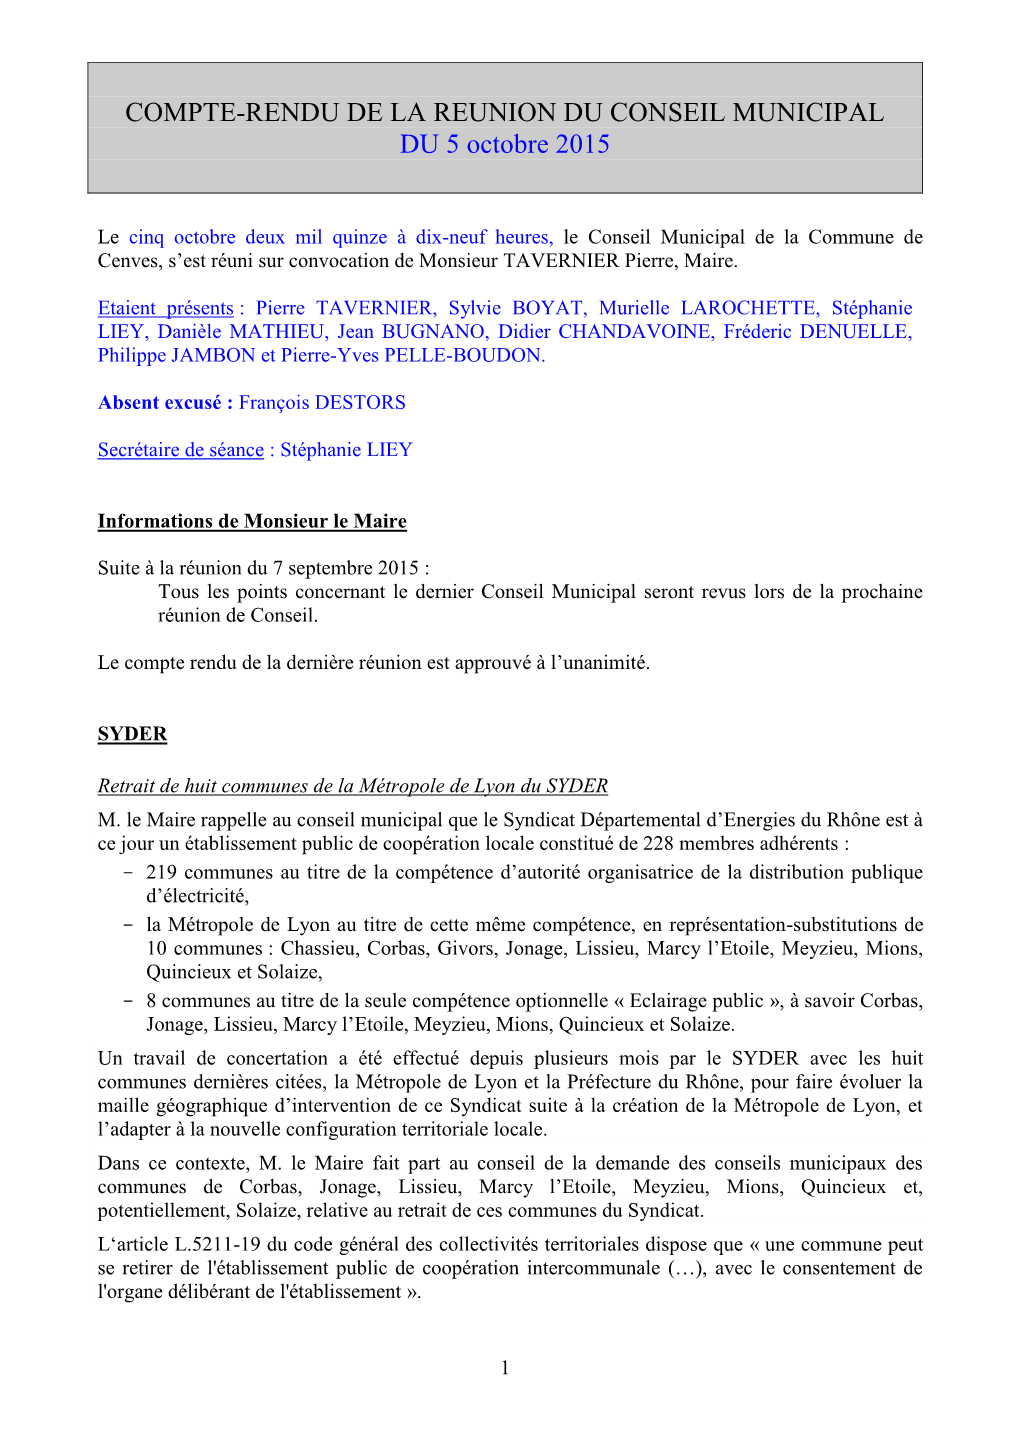 COMPTE-RENDU DE LA REUNION DU CONSEIL MUNICIPAL DU 5 Octobre 2015